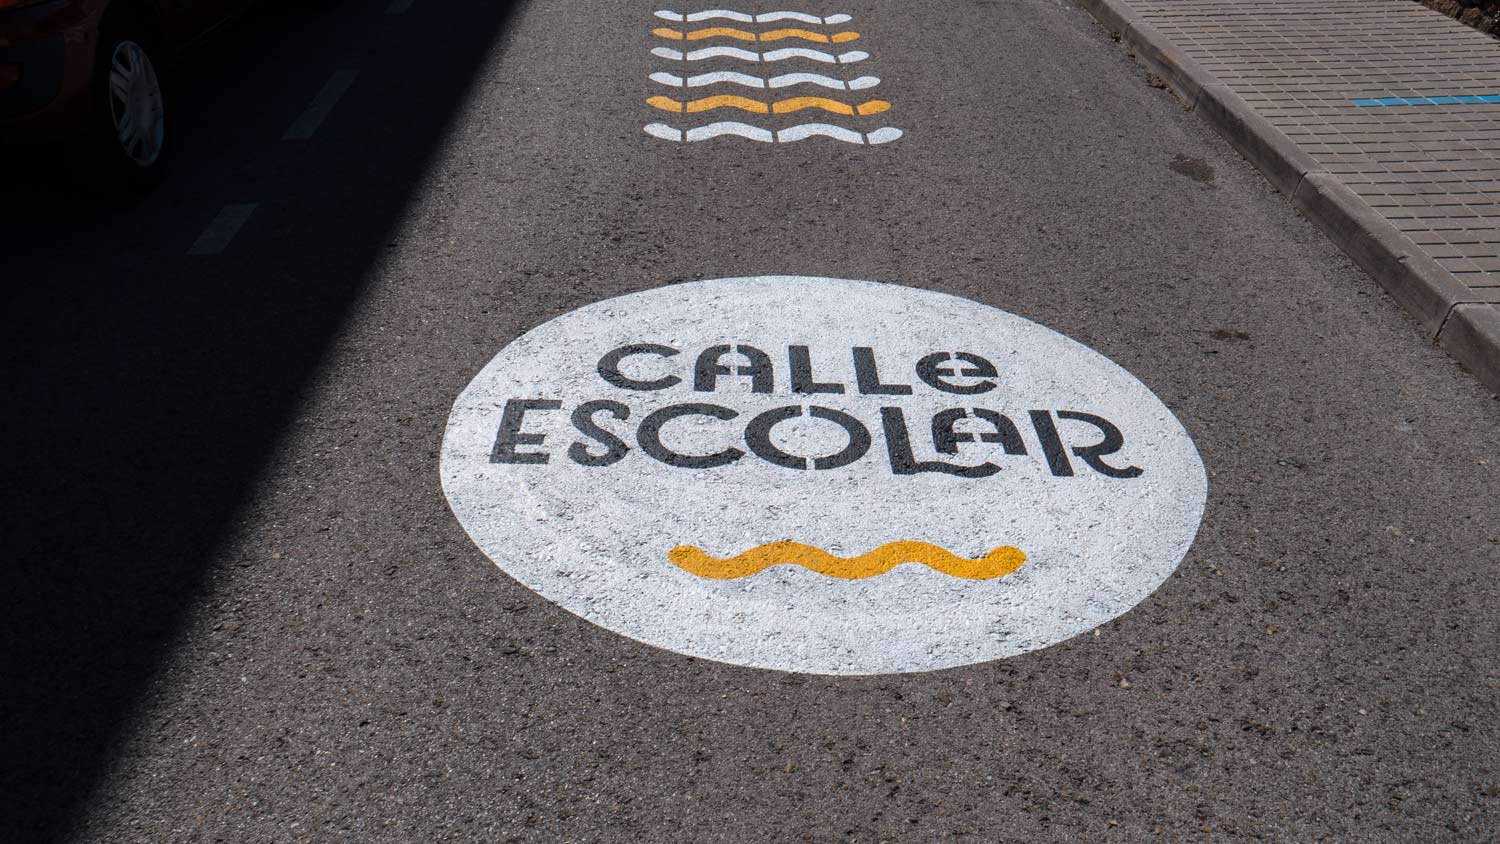 Manzanares El Real refuerza la seguridad vial en zonas escolares con señalización renovada